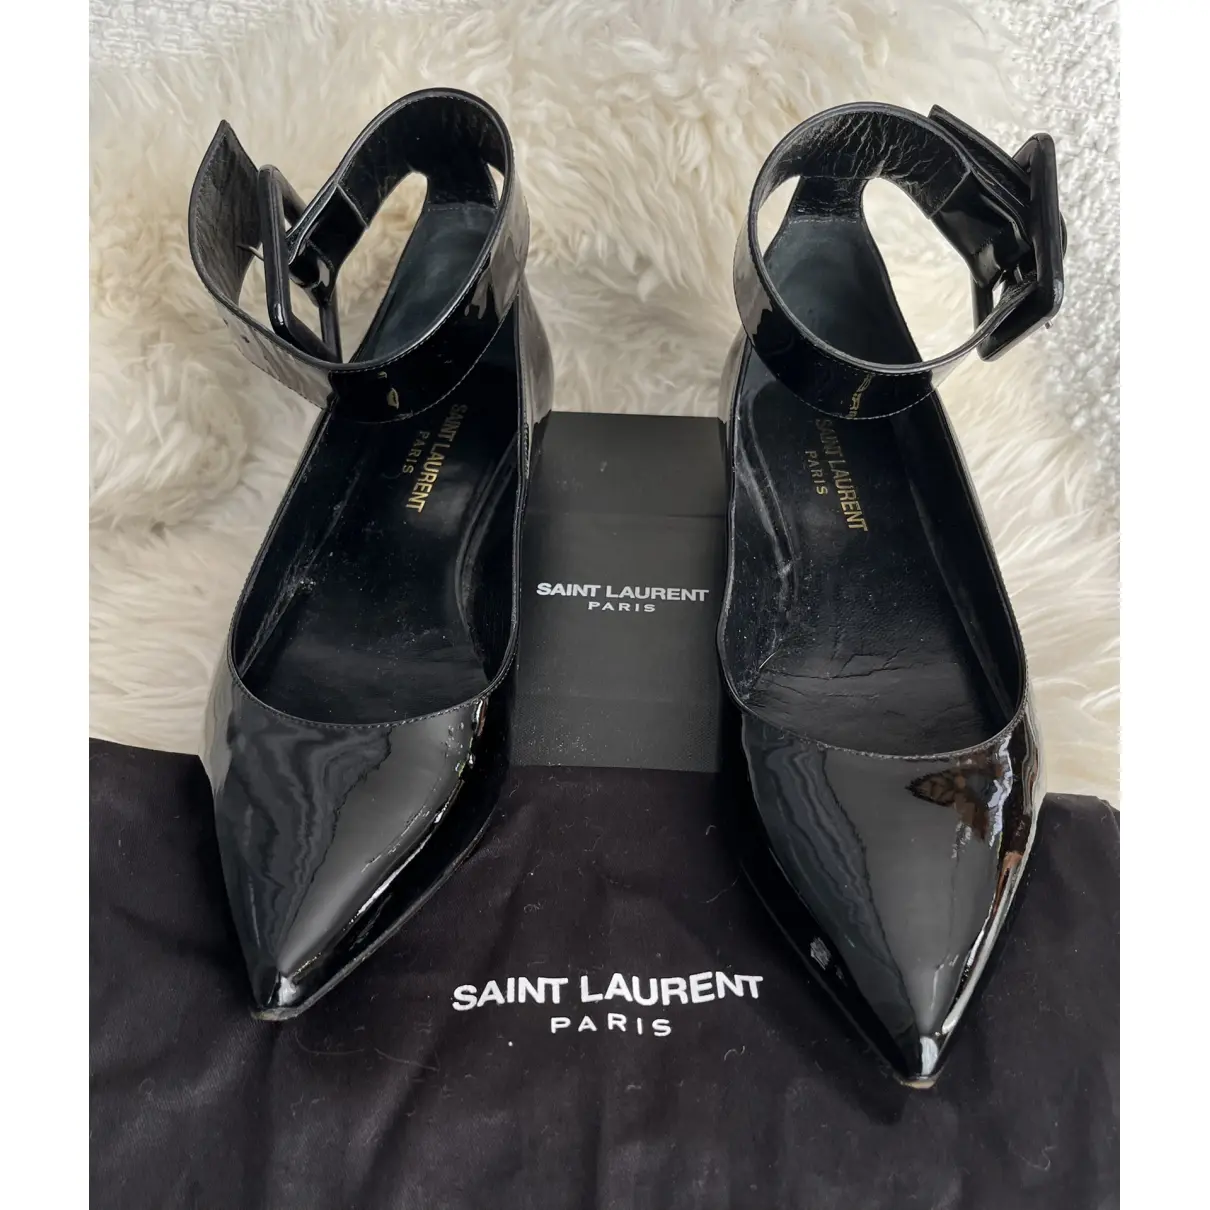 Buy Saint Laurent Patent leather ballet flats online